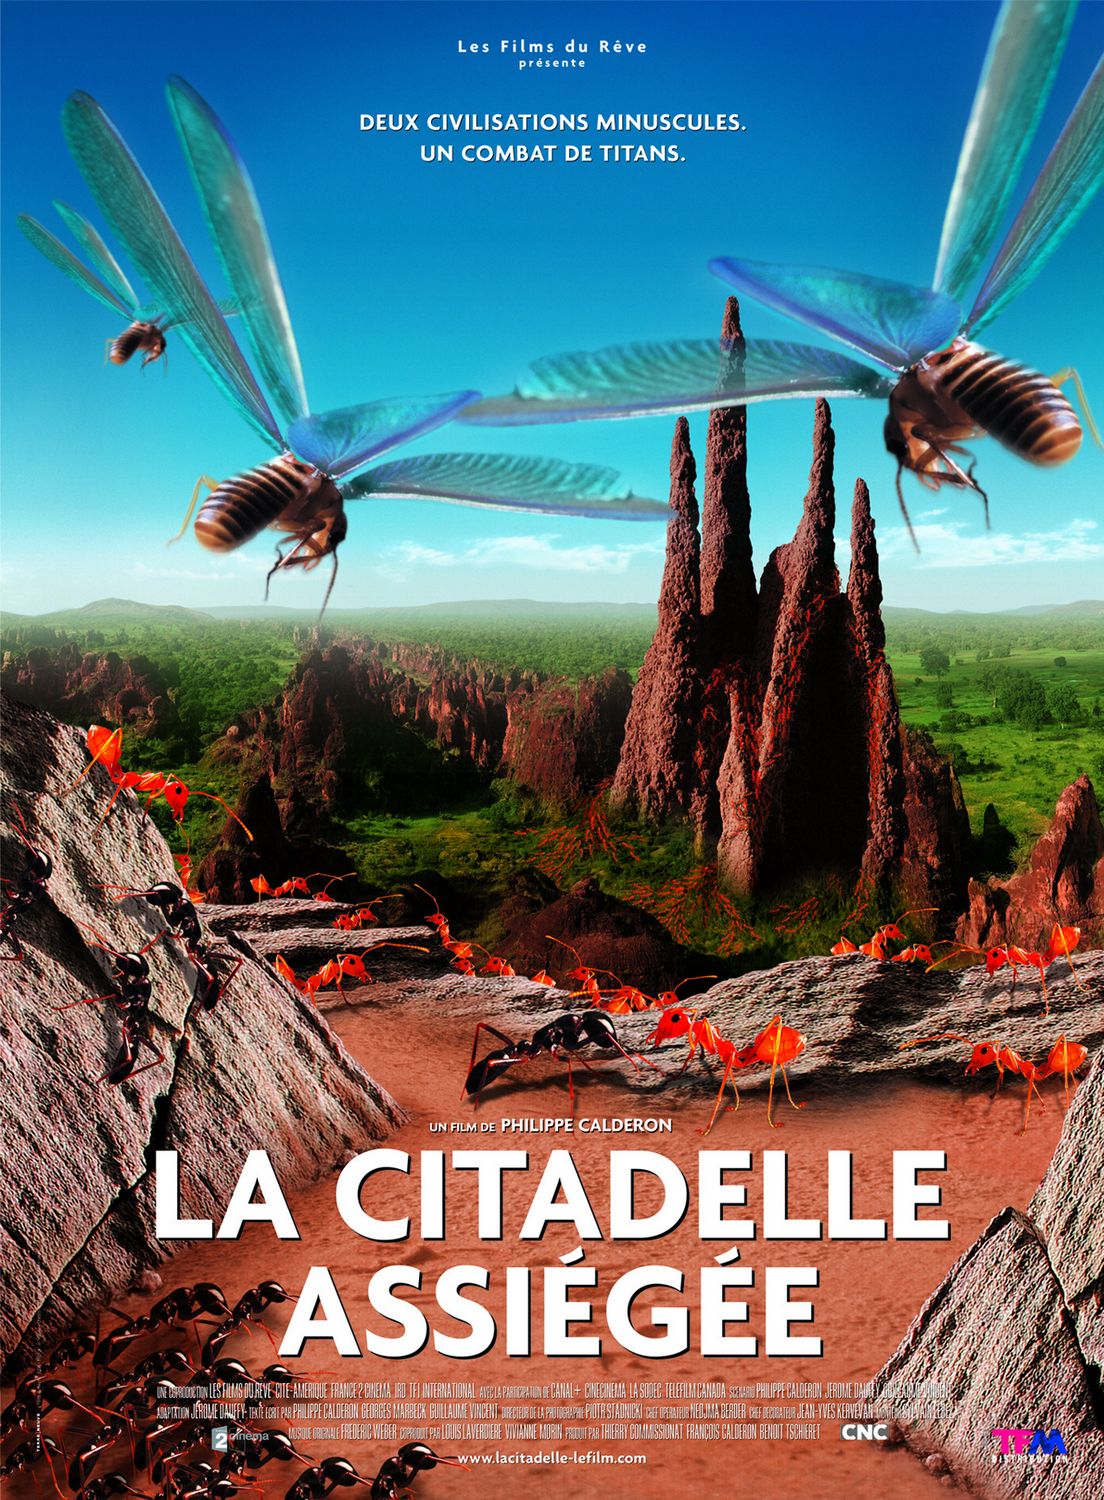 Extra Large Movie Poster Image for Citadelle assiégée, La 